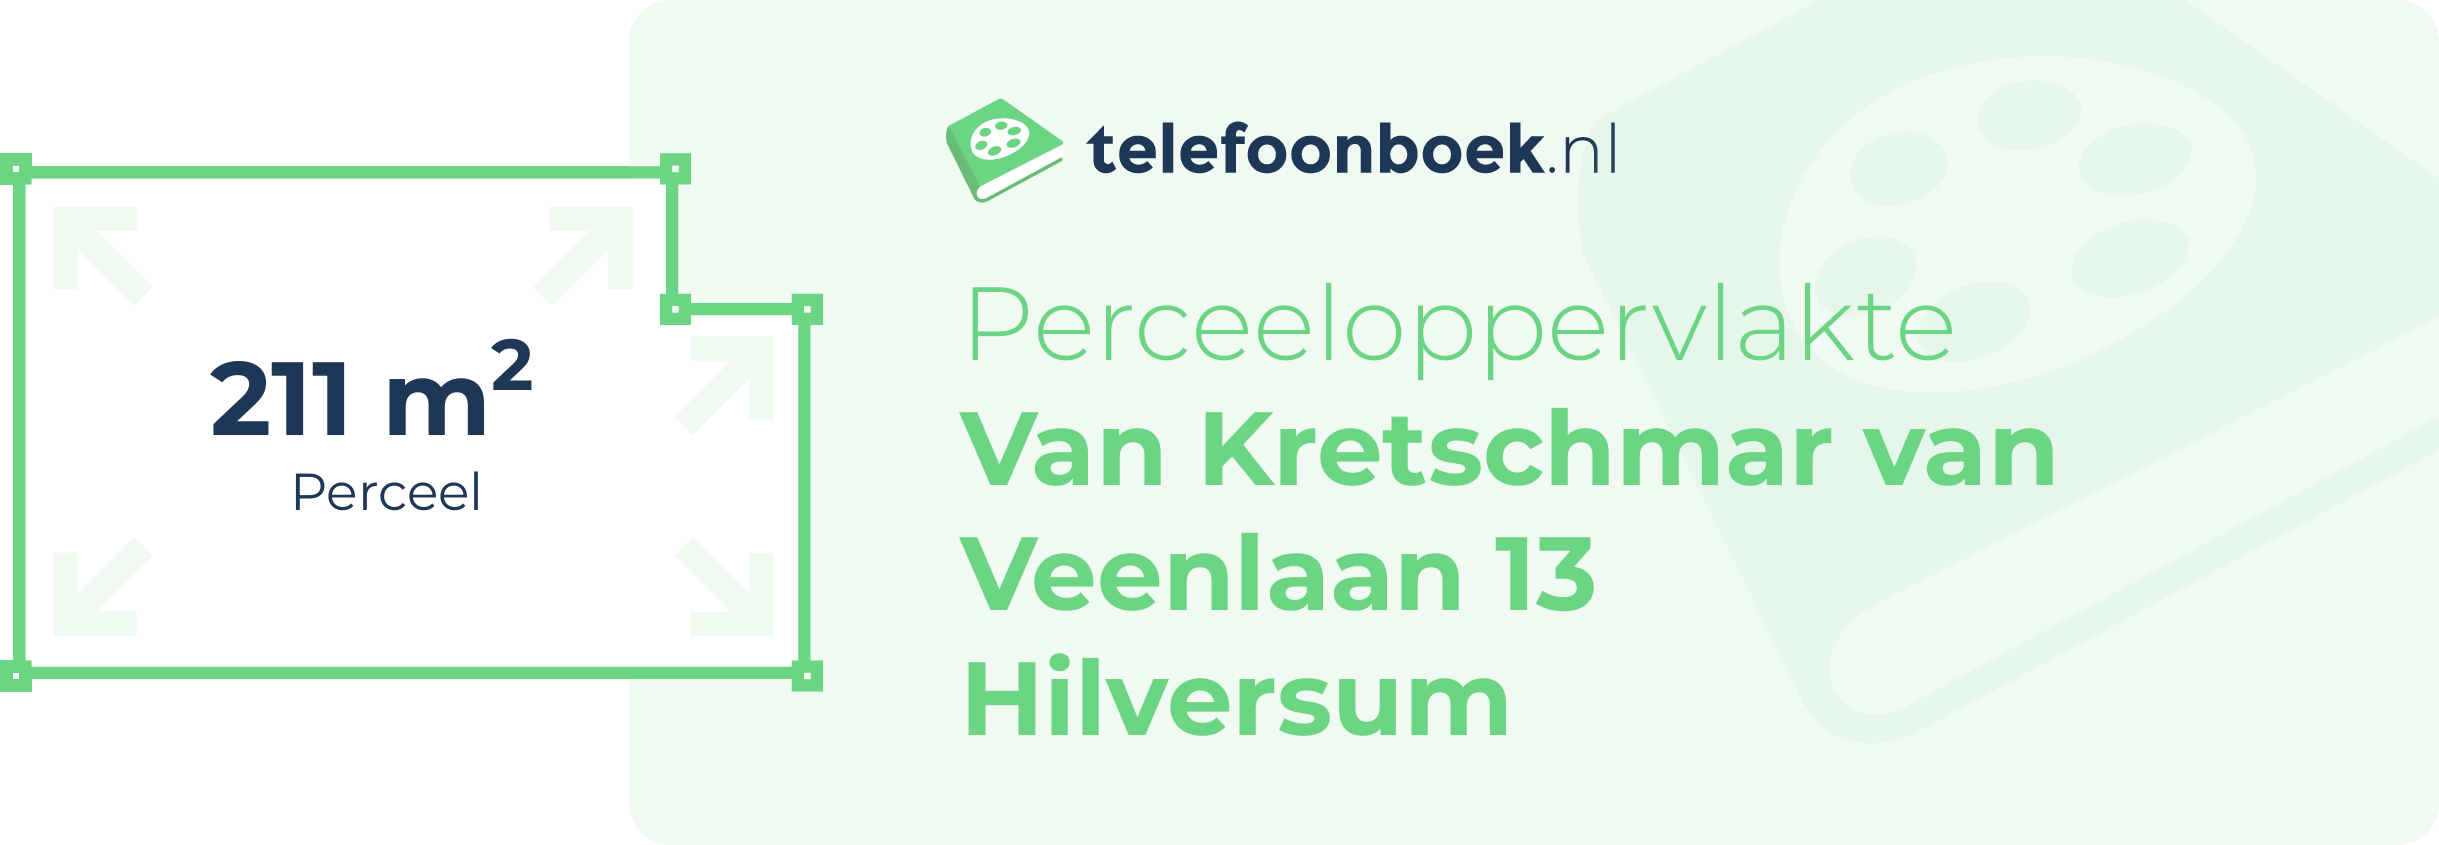 Perceeloppervlakte Van Kretschmar Van Veenlaan 13 Hilversum